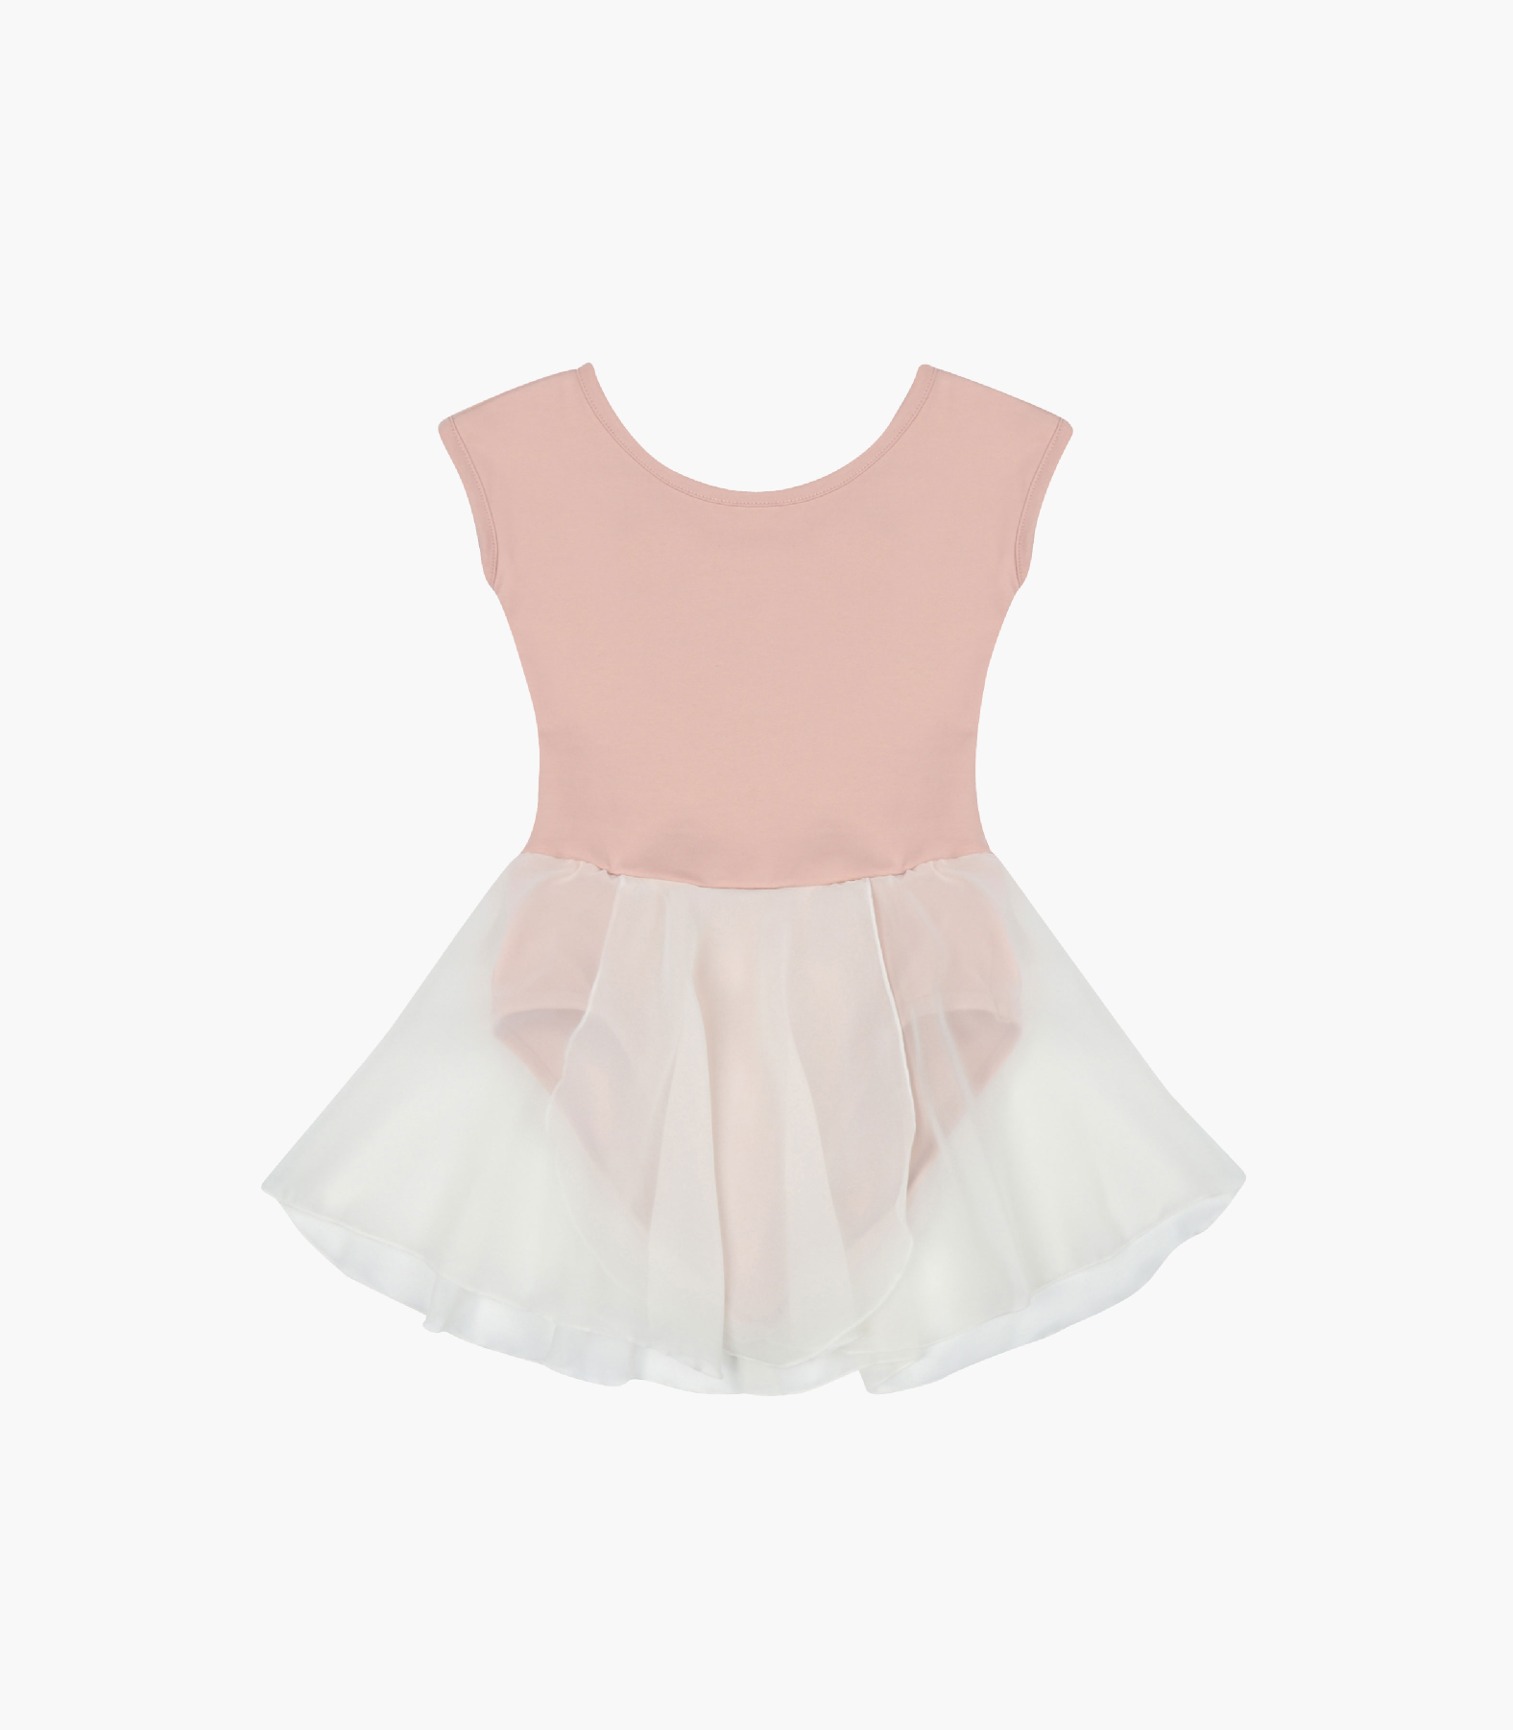 French Chiffon Skirt_Pink